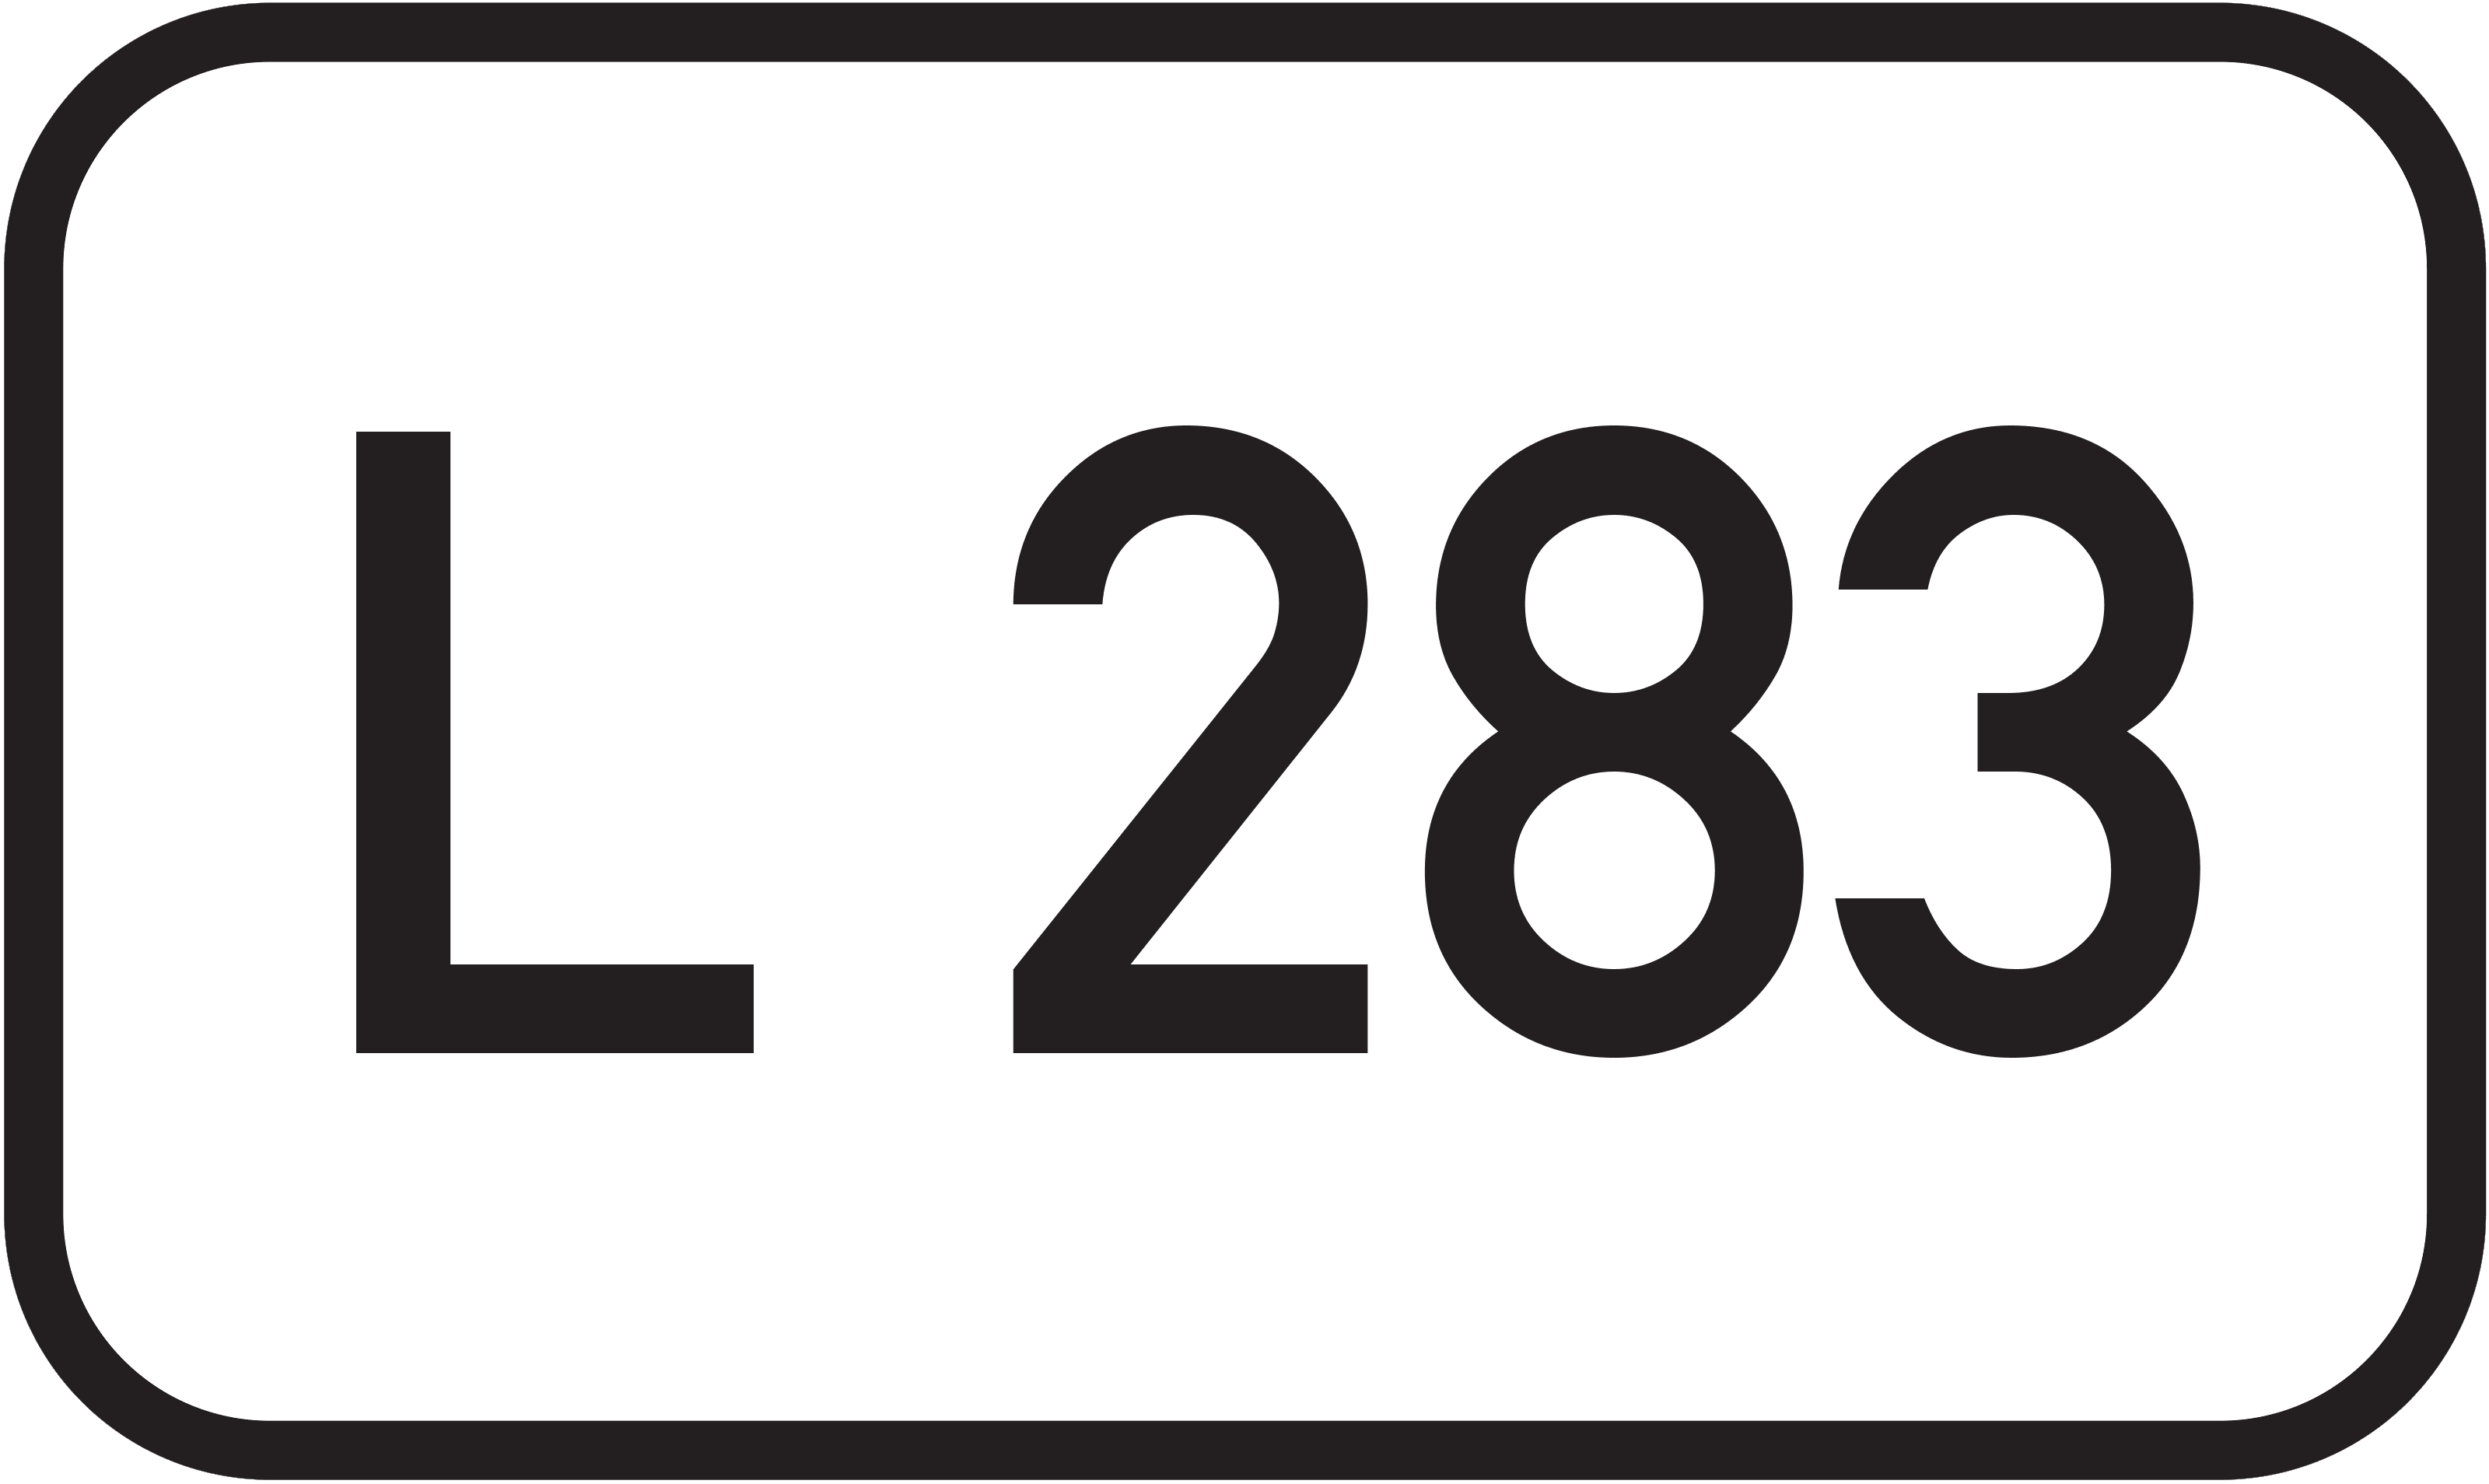 Landesstraße L 283